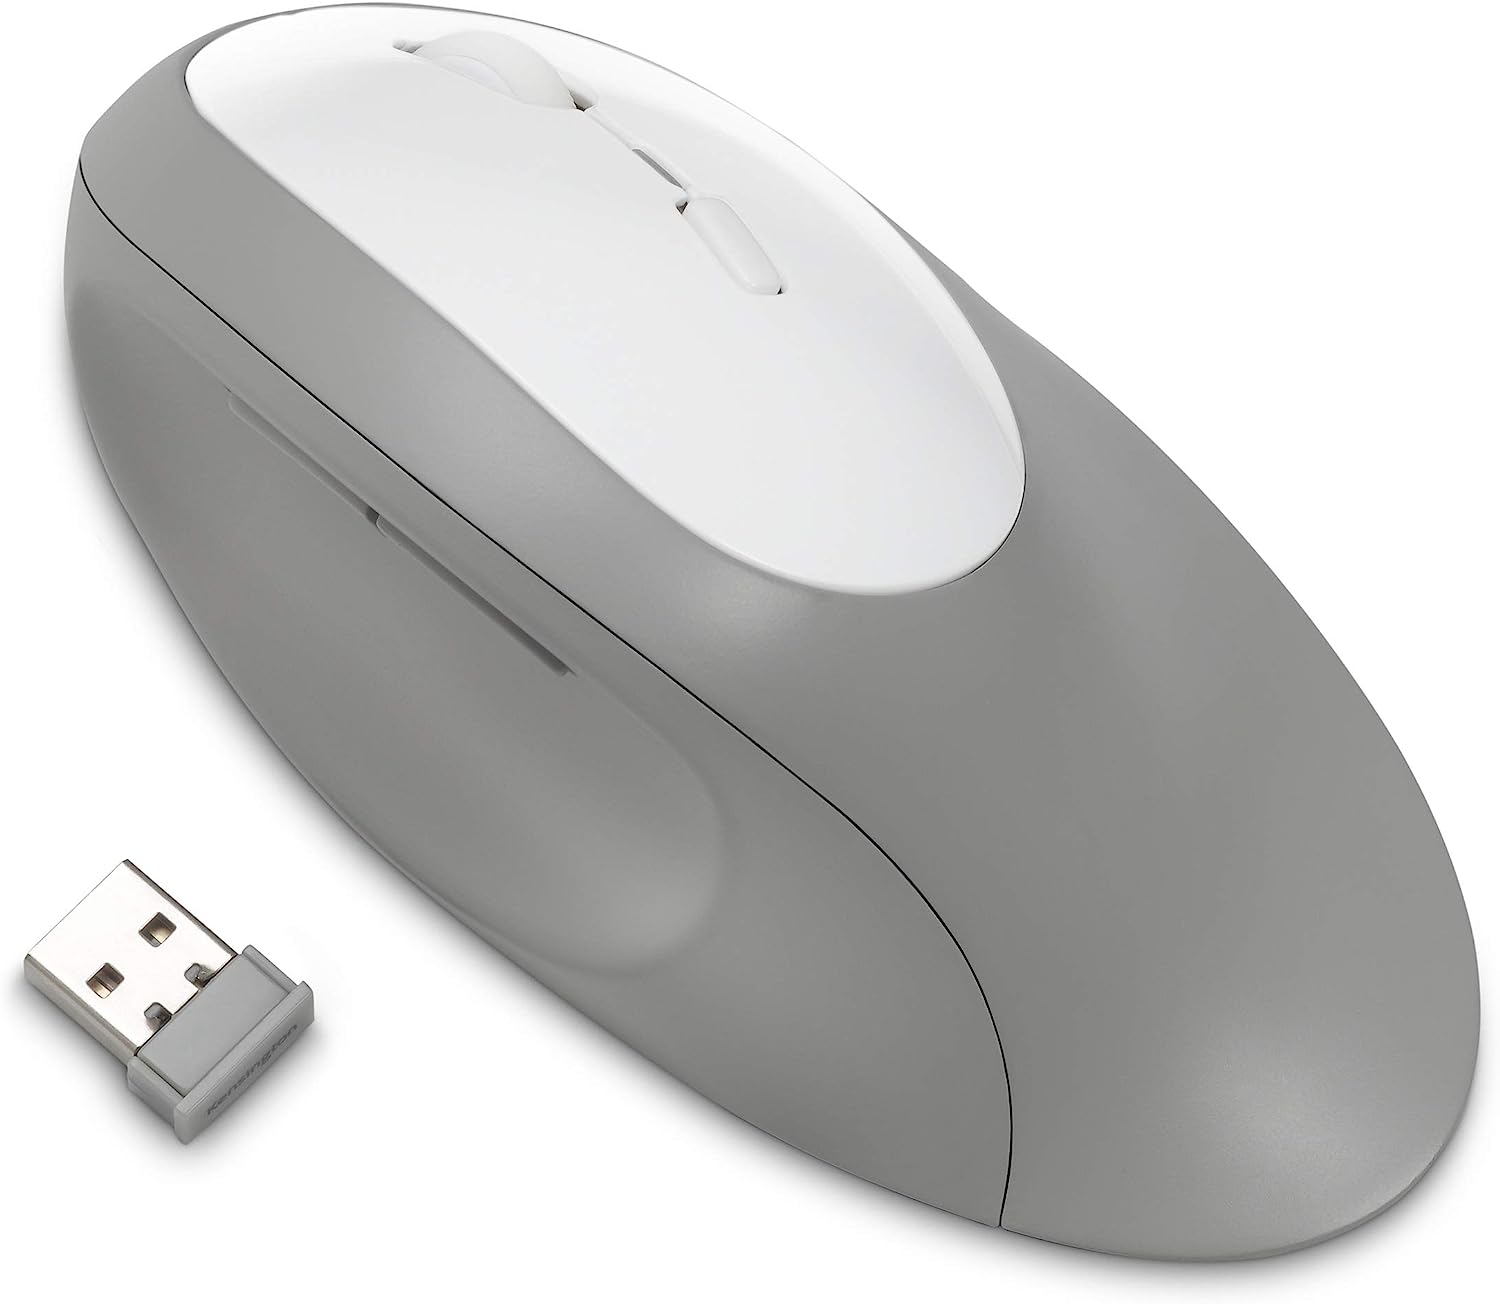 Kensington Pro Fit Ergo Wireless Keyboard & Mouse Grey